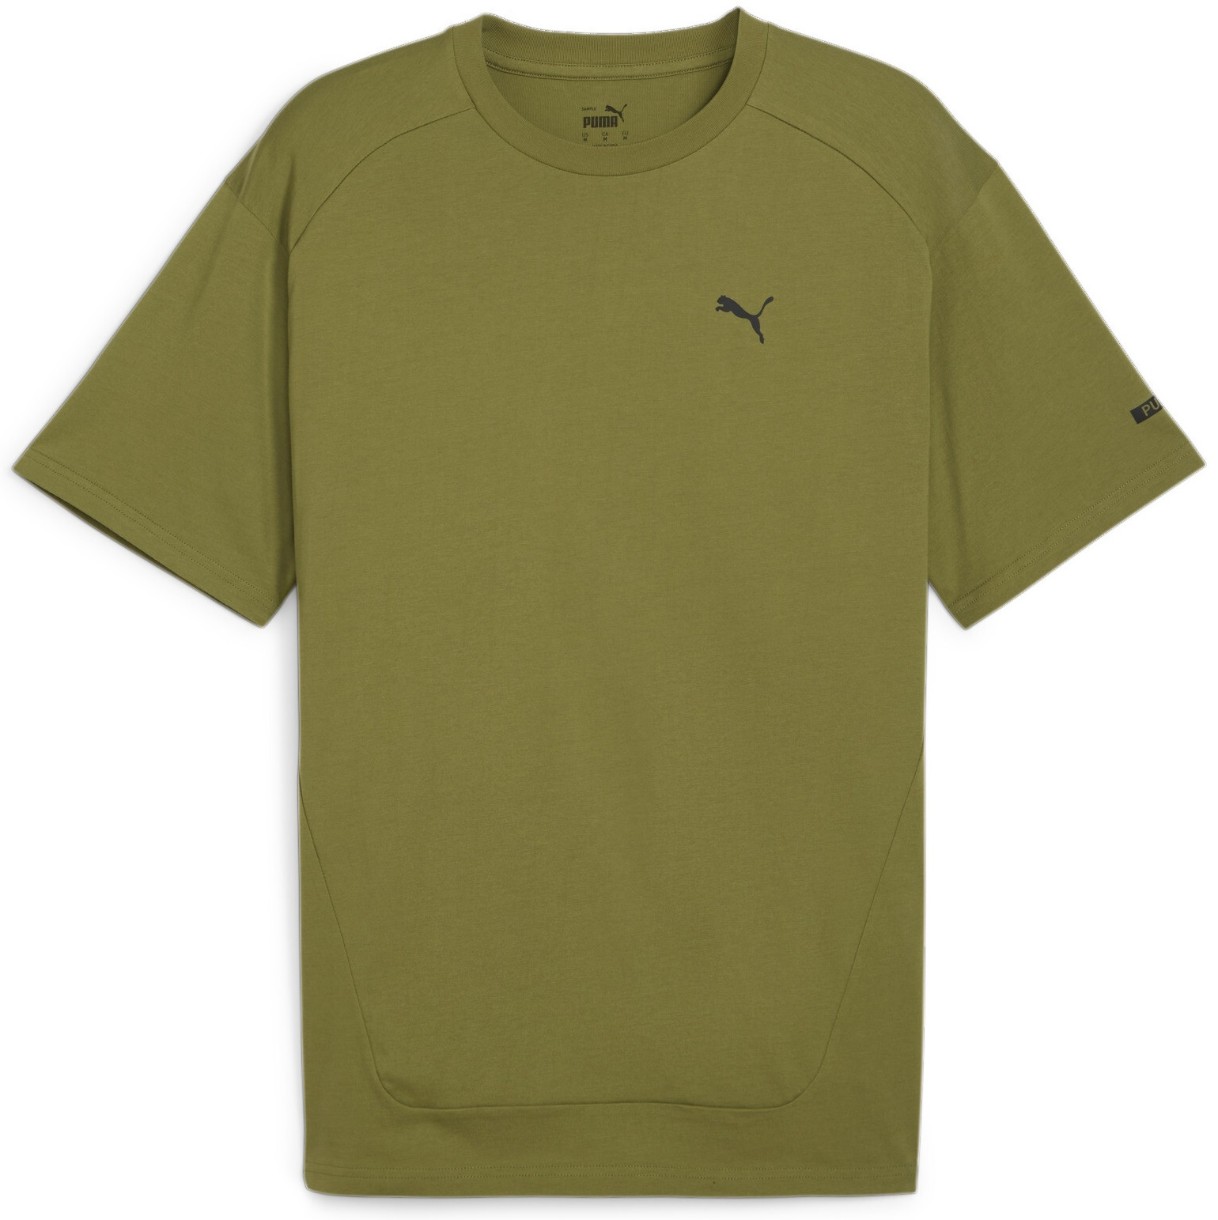 Мужская футболка Puma Rad/Cal Tee Olive Green, s.M